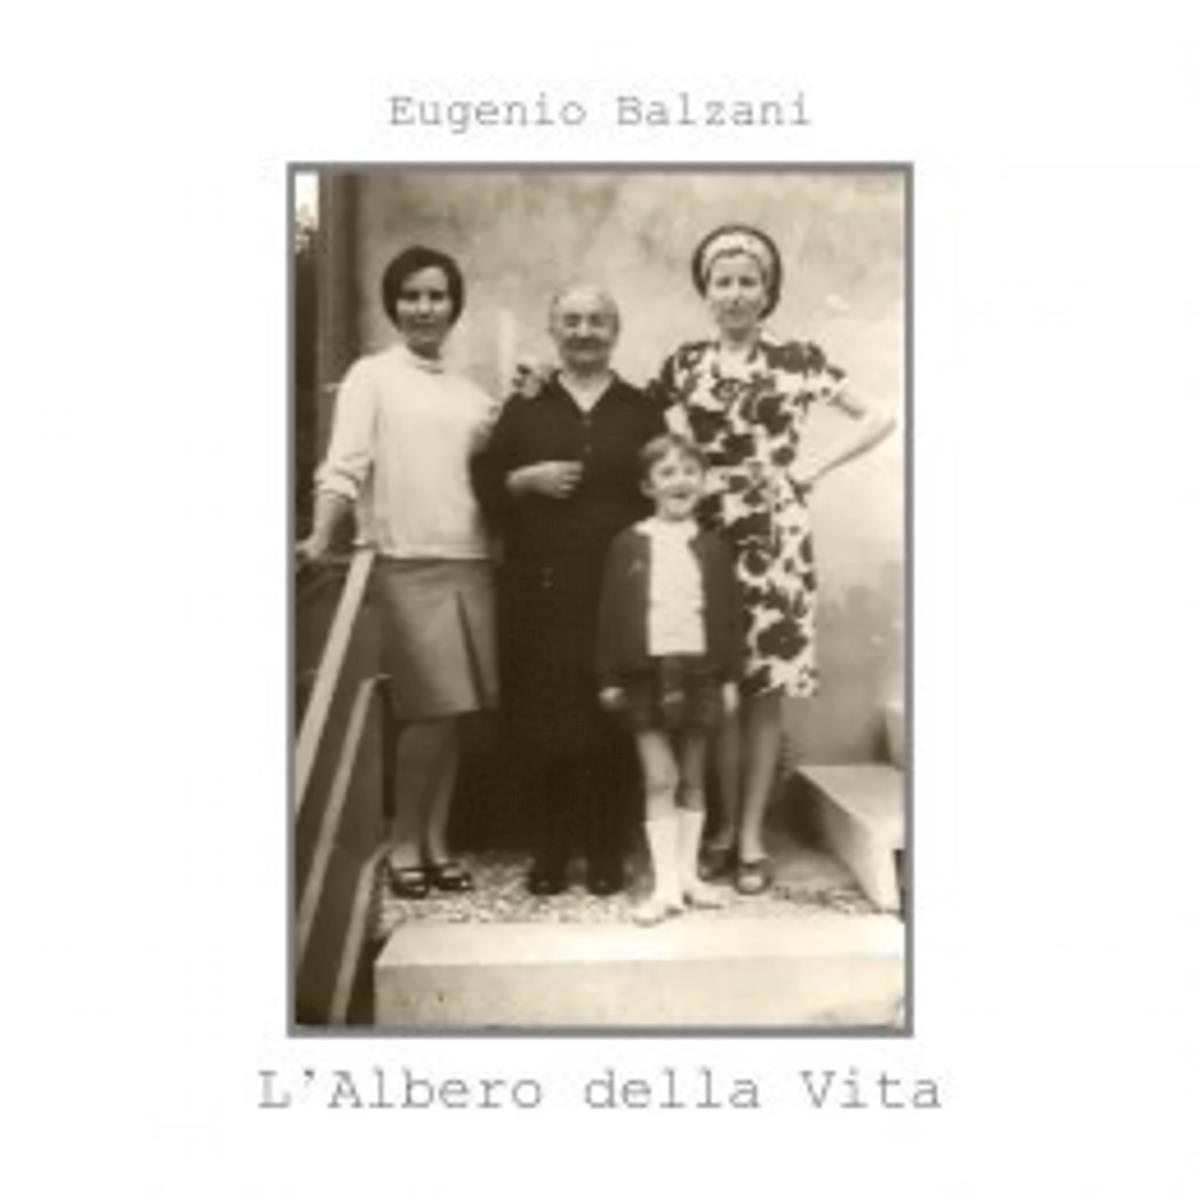 EUGENIO BALZANI: L'albero della vita è la delicata ballad estratta dall'album ItaliòPolis del cantautore romagnolo